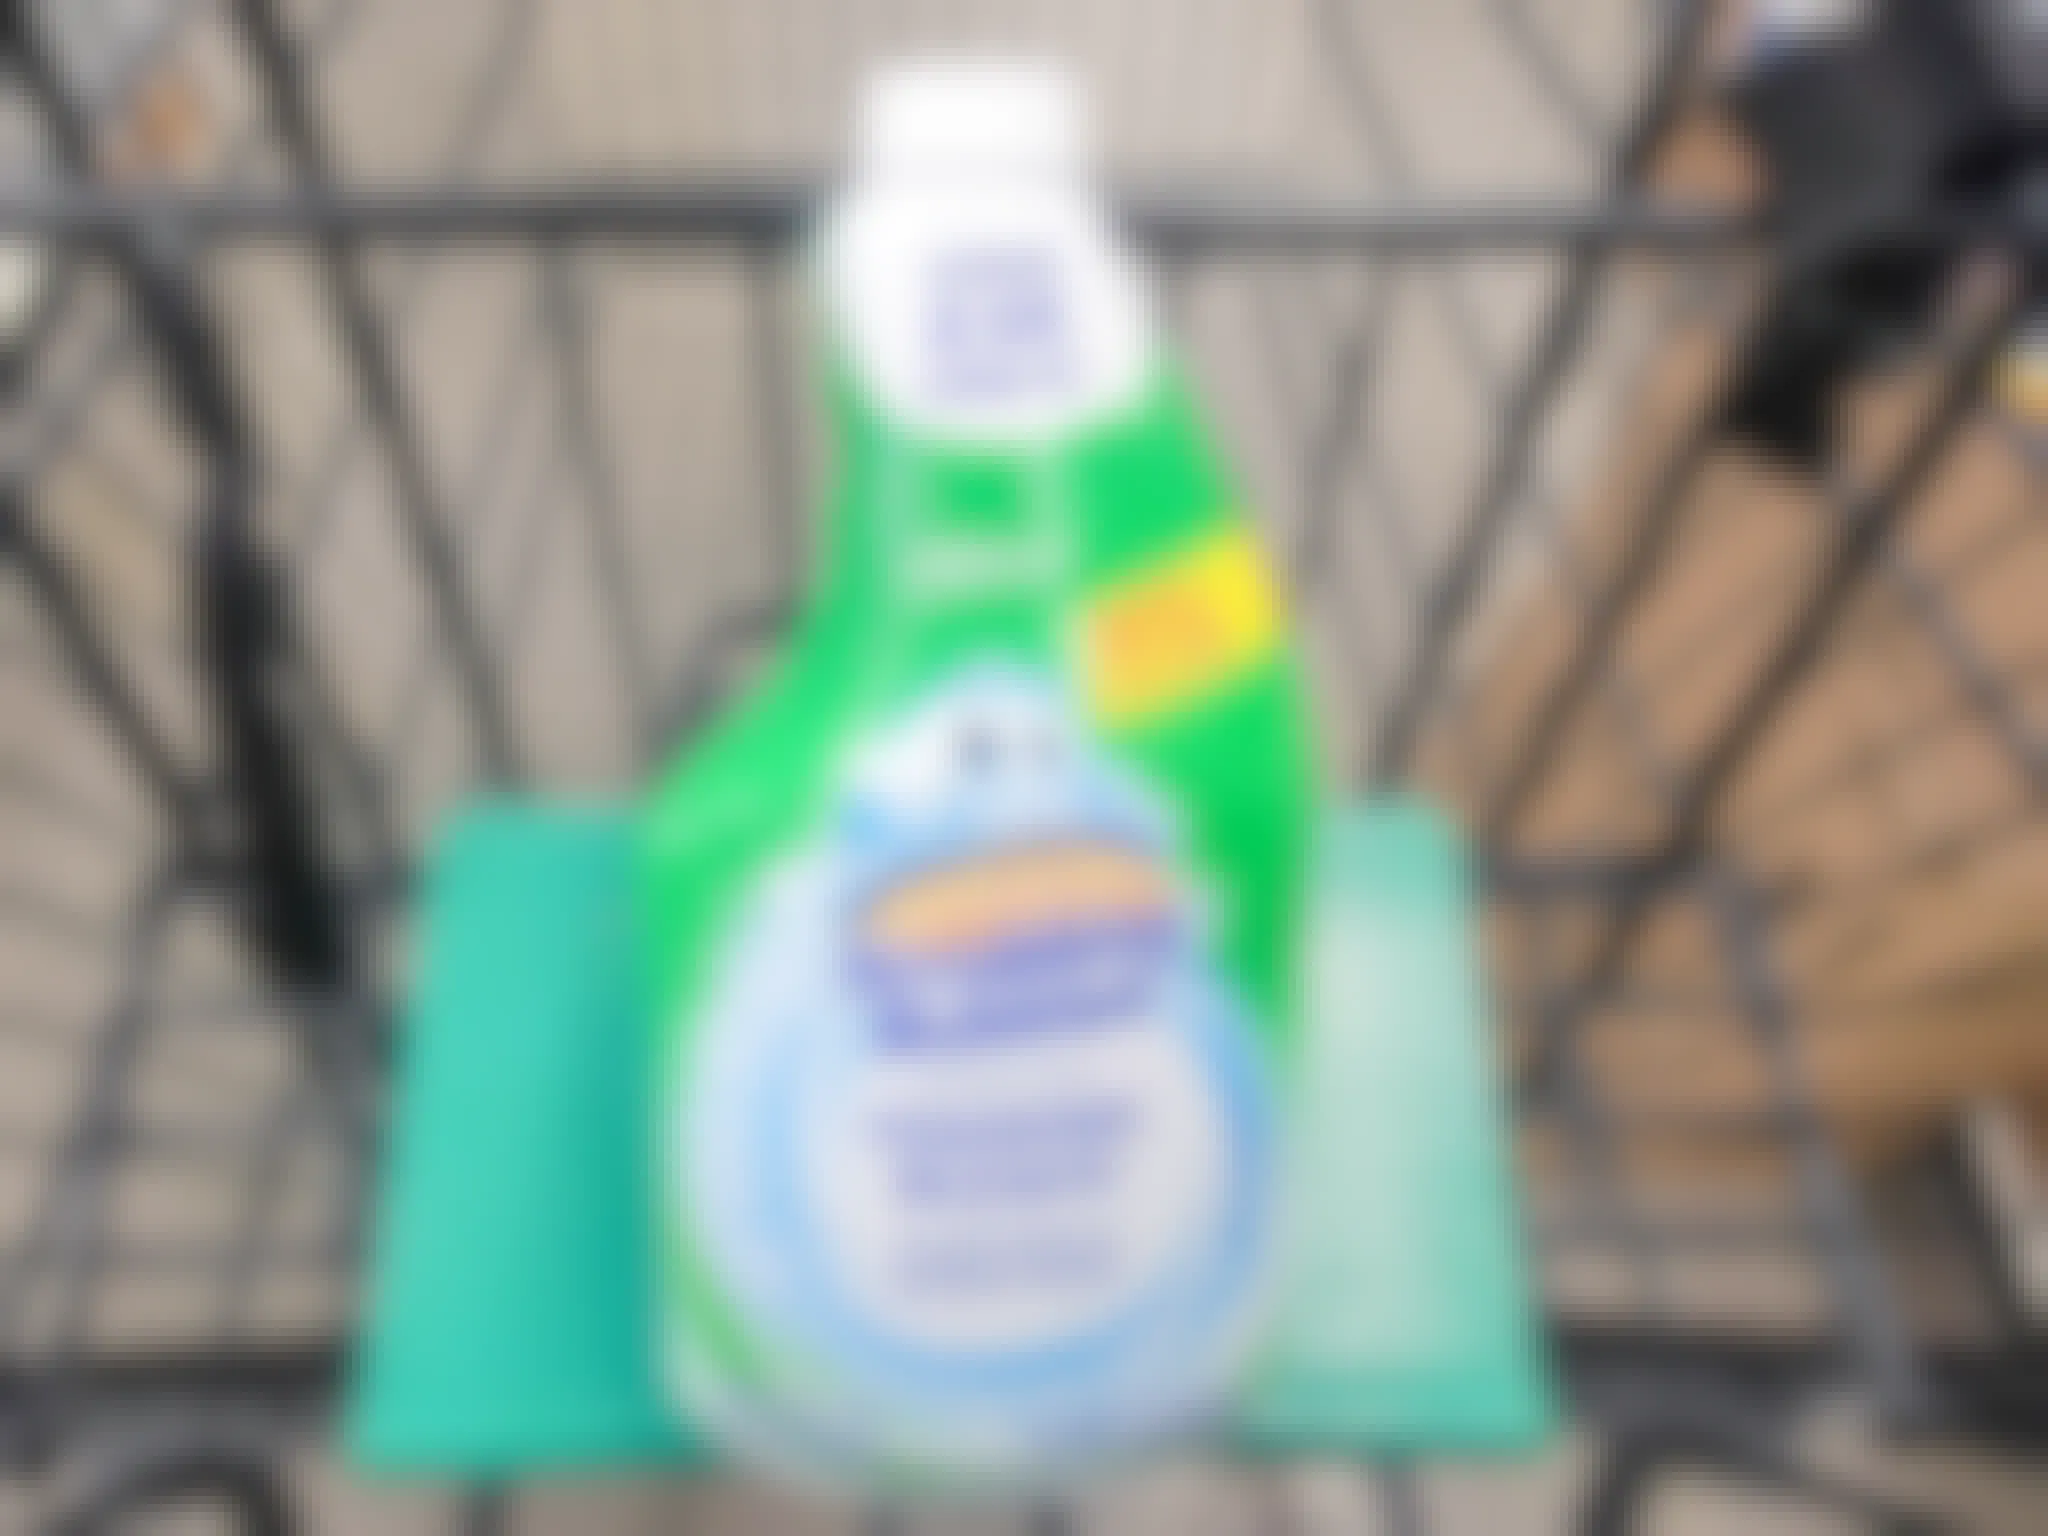 bottle of scrubbing bubbles foaming bleach in a cart